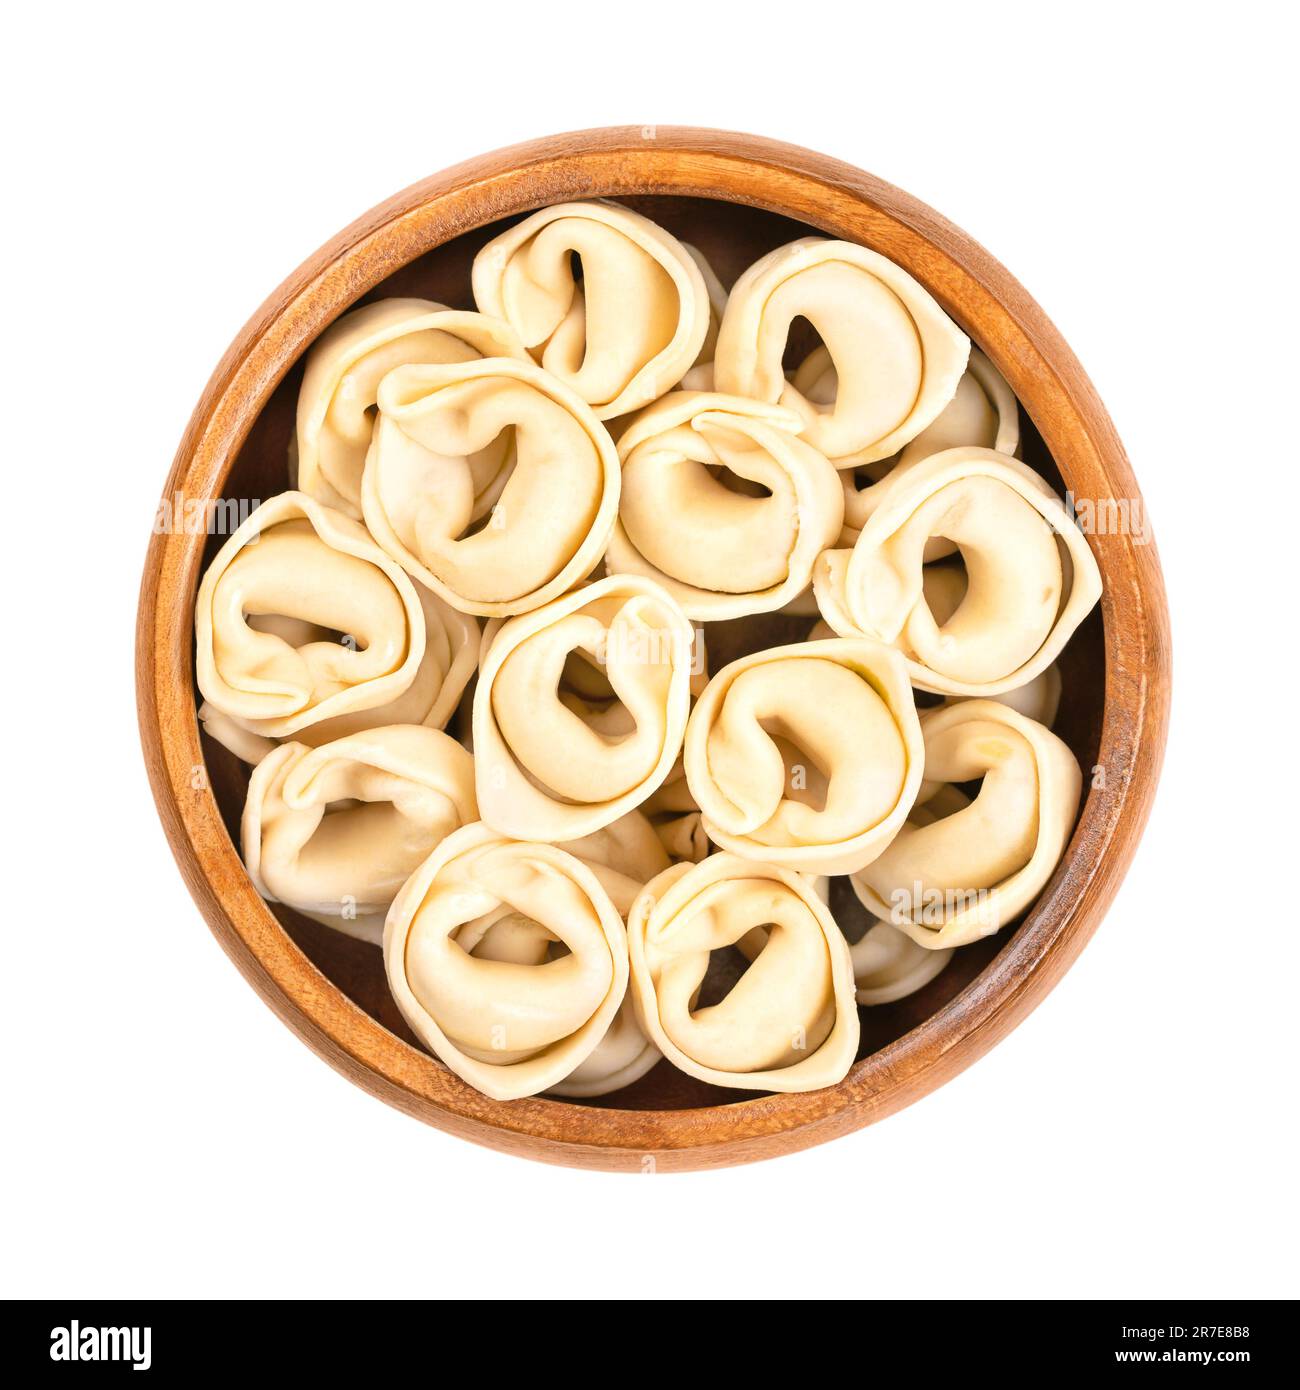 Ungekochte, getrocknete Tortellini in einer Holzschüssel. Industriell gefüllte Teigtaschen, italienische Pasta, mit unverwechselbarer Form. Stockfoto